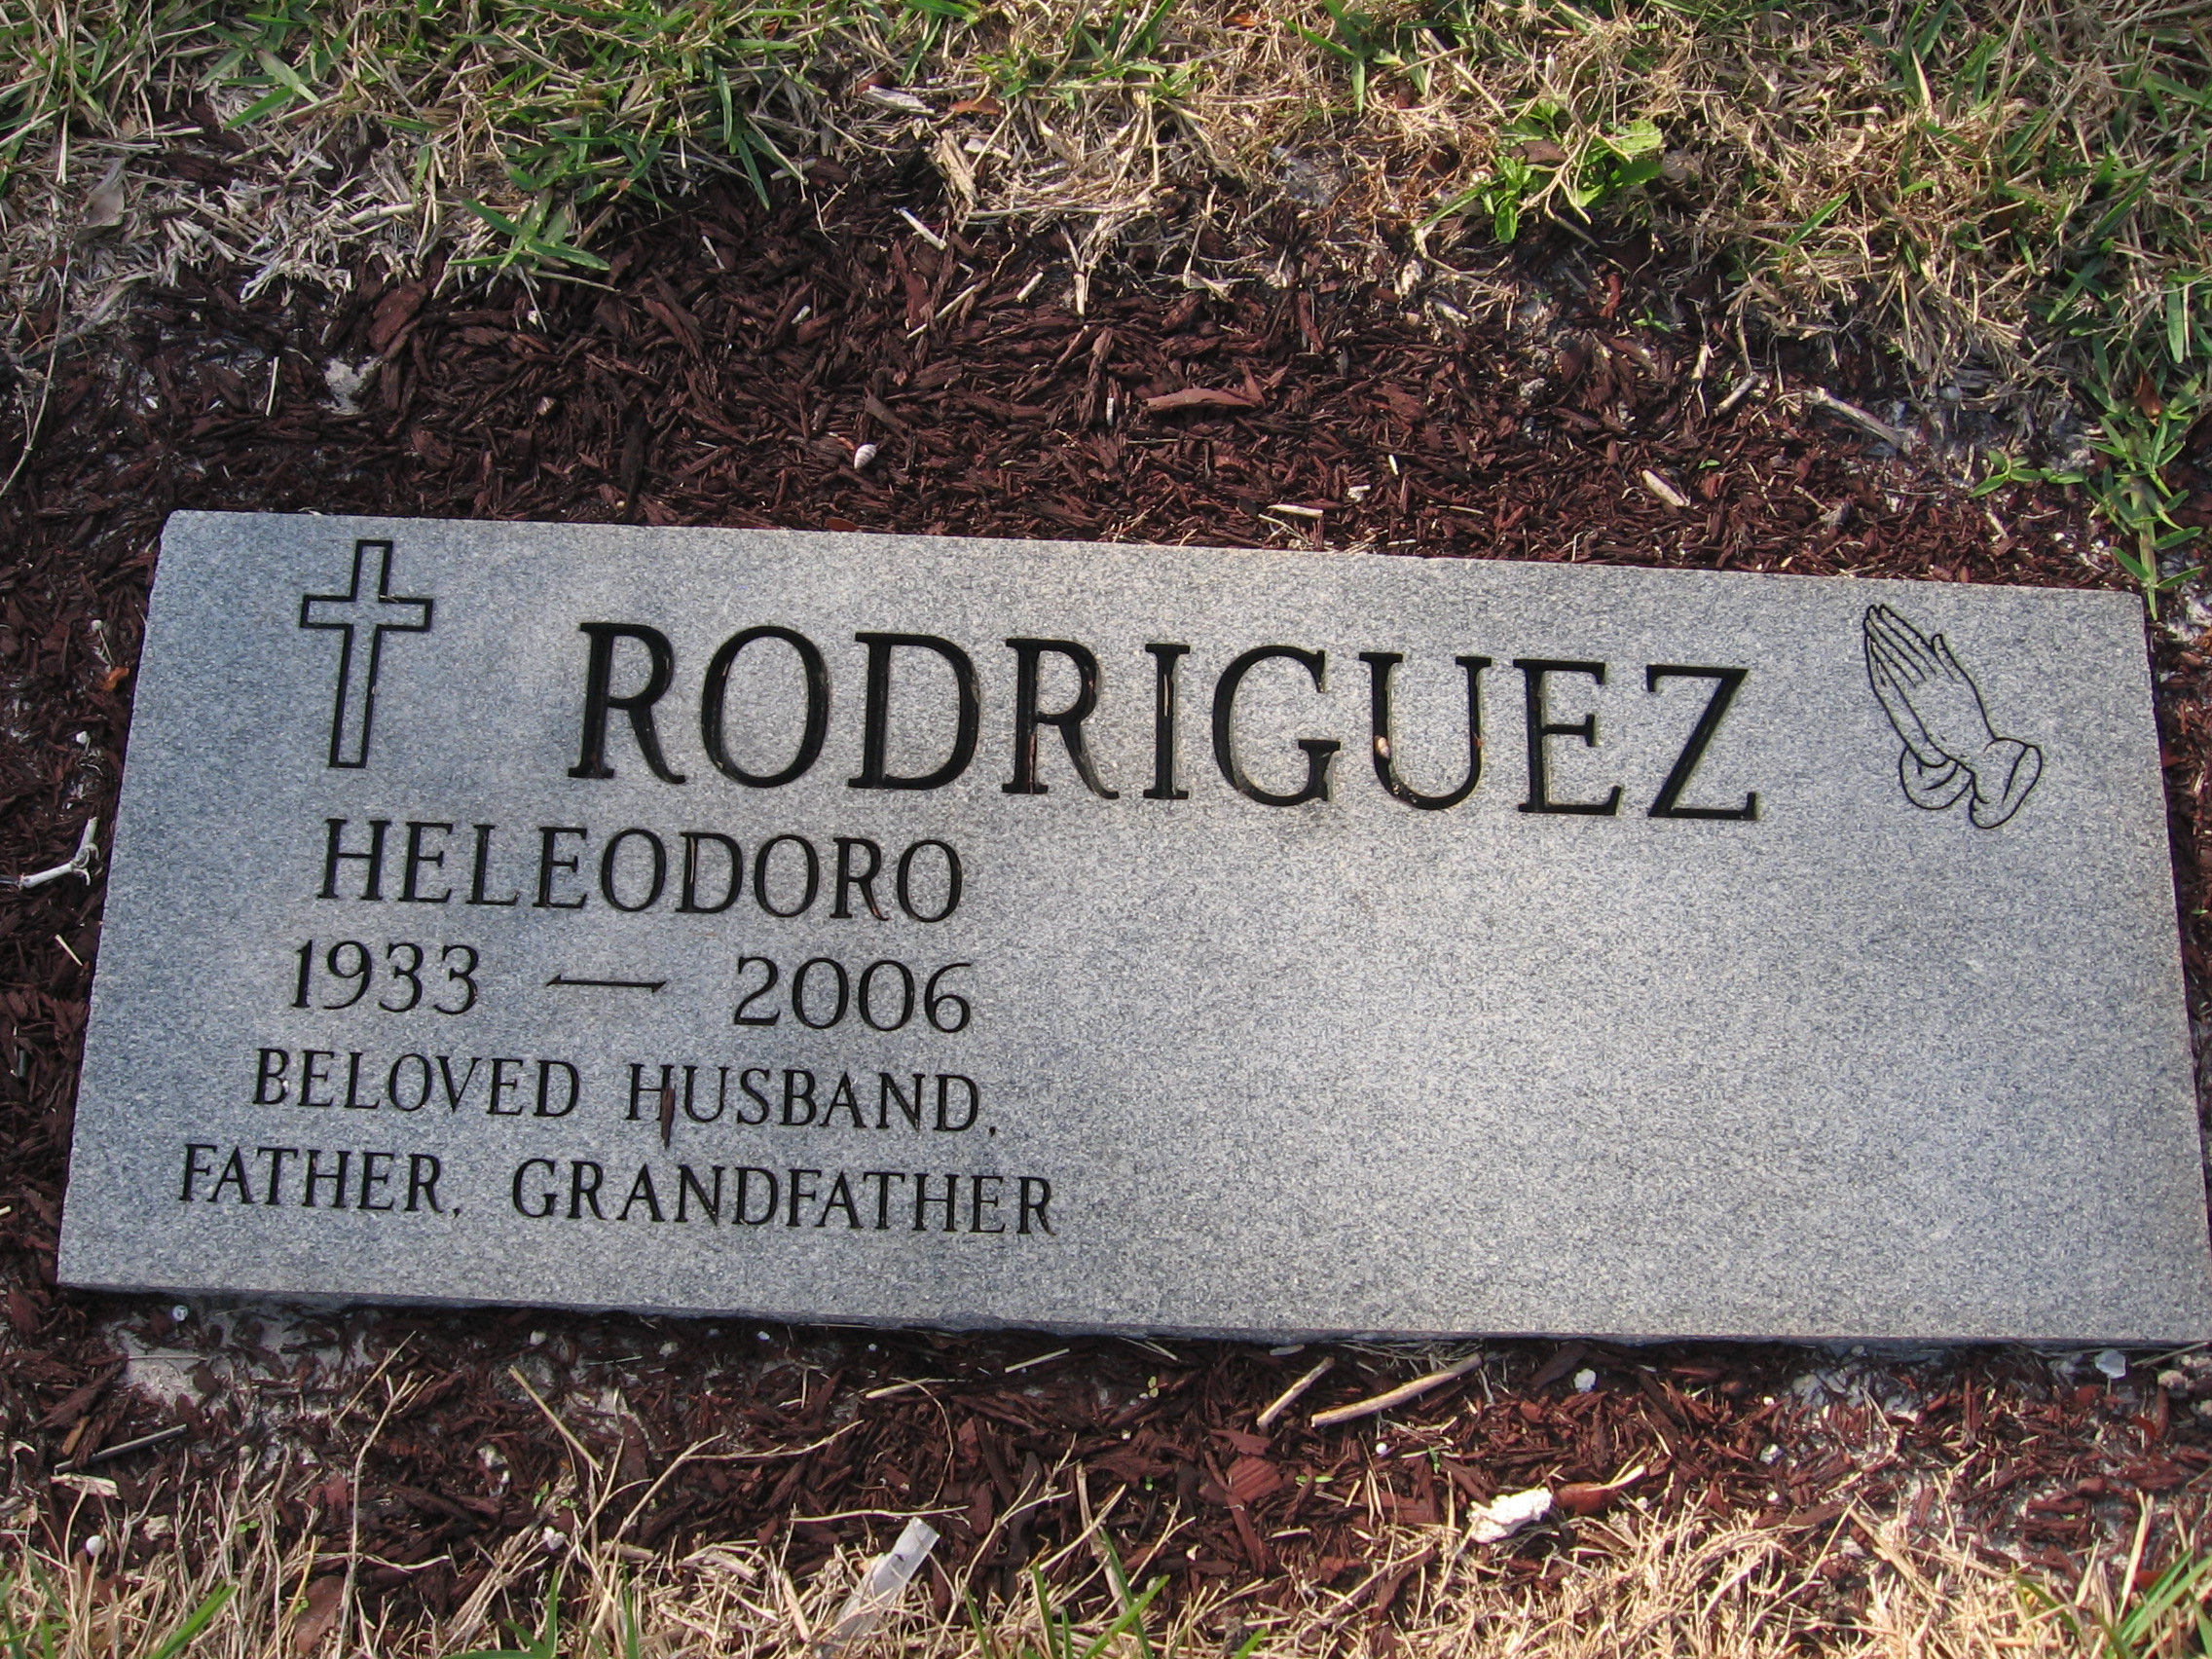 Heleodoro Rodriguez